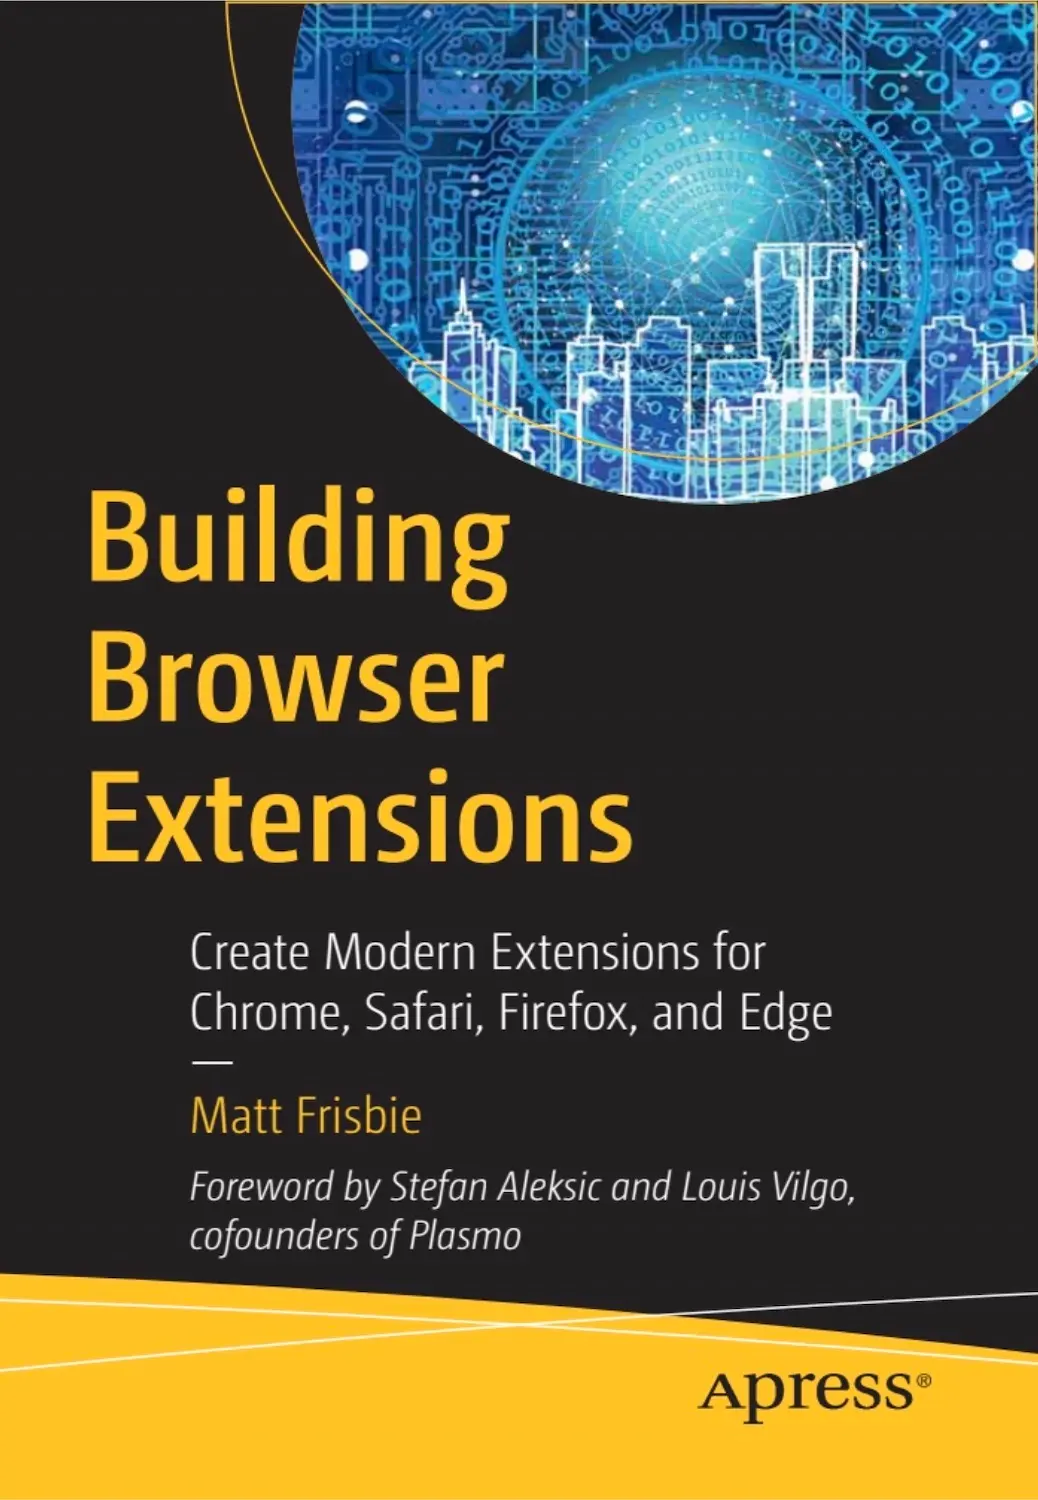 Building Browser Extensions - Matt Frisbie